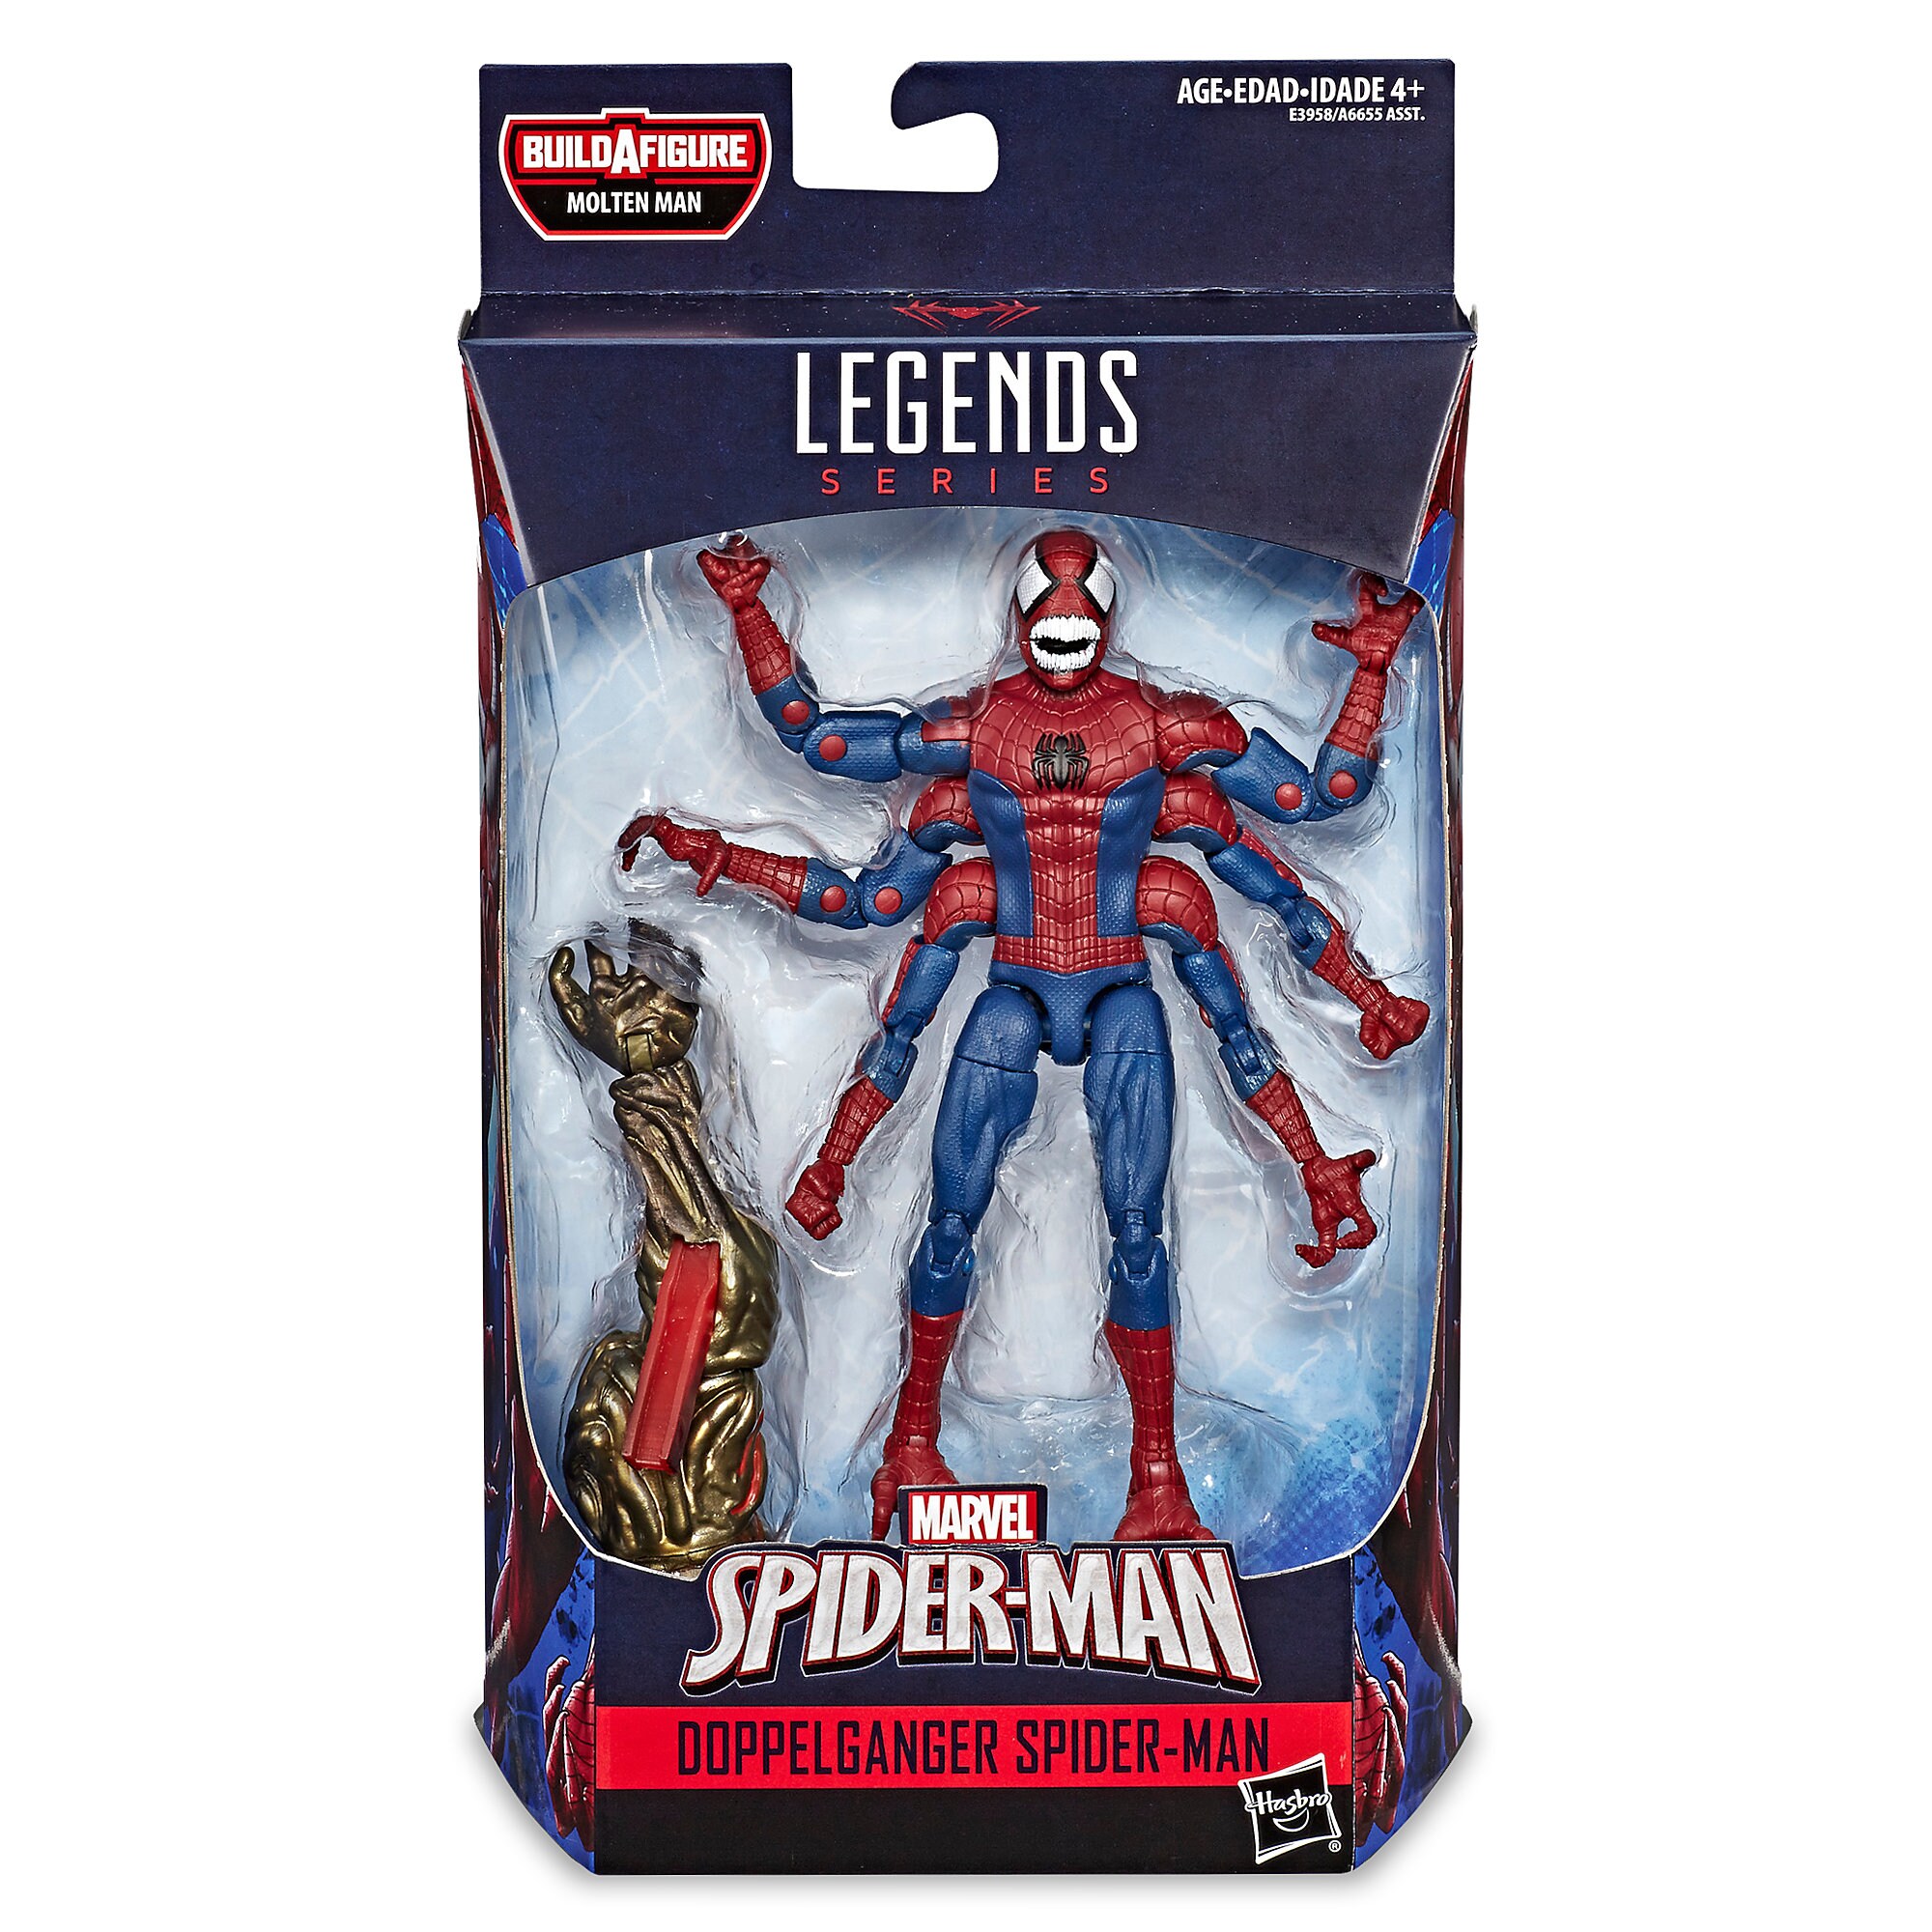 Doppelganger Spider-Man Action Figure - Spider-Man Legends Series